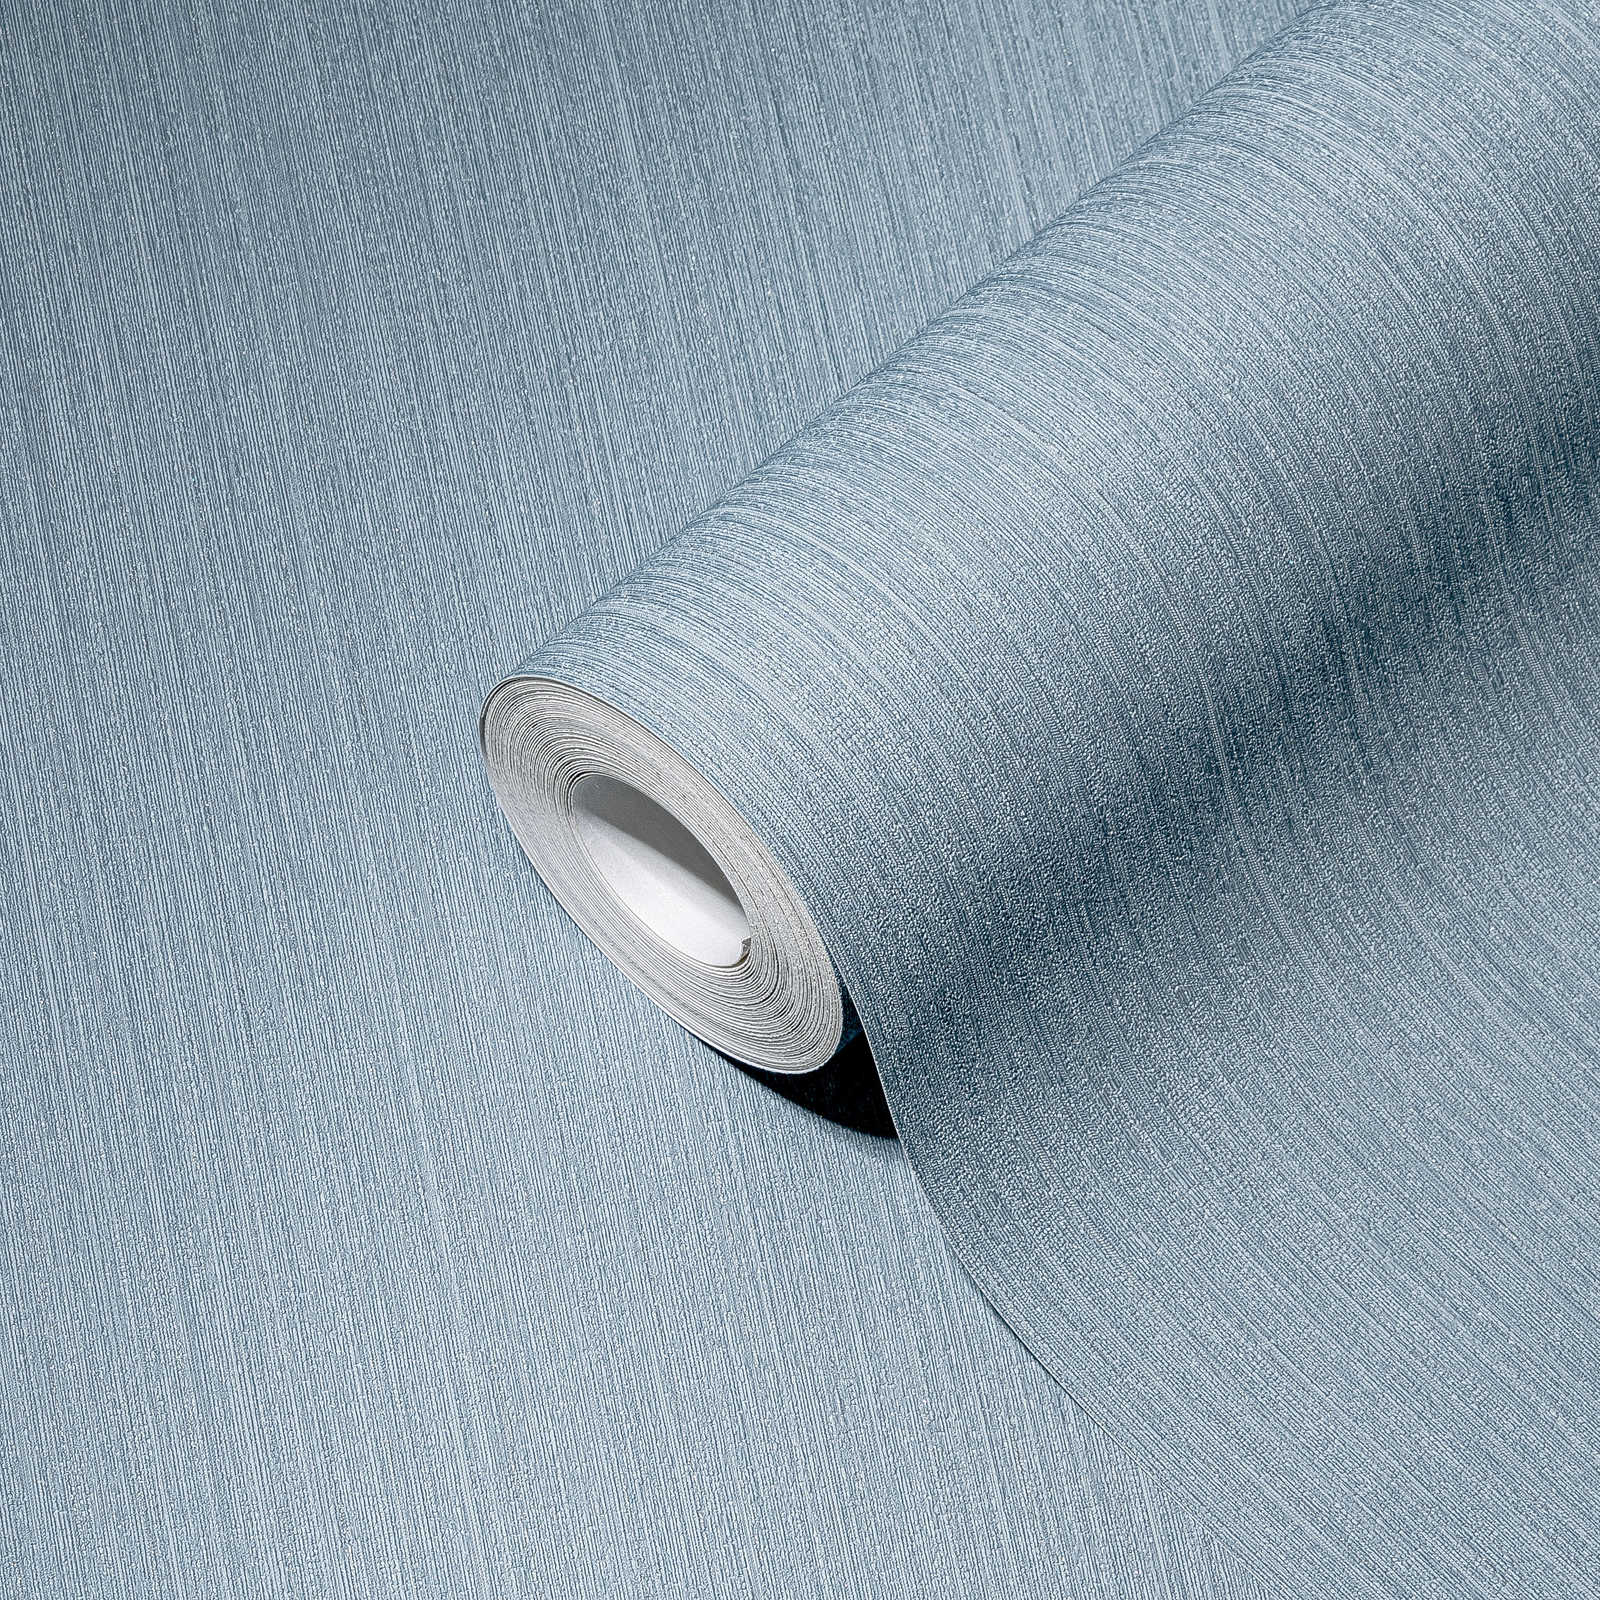             Blauw vliesbehang effen, zijdemat met textuureffect
        